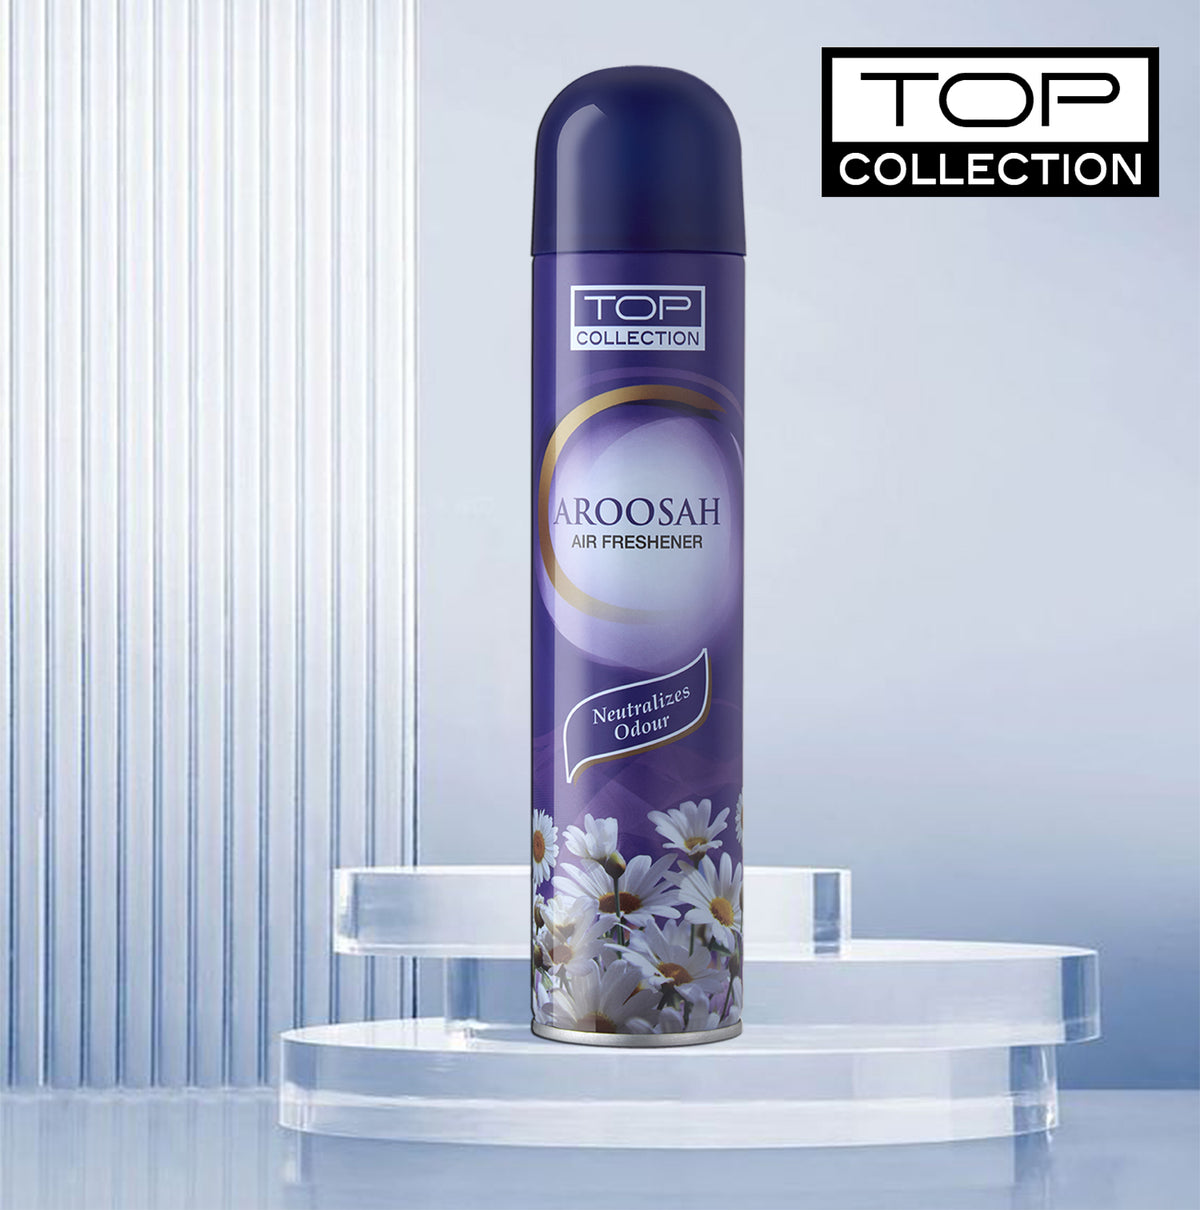 Top Collection Air Freshener - Aroosah, 300ml